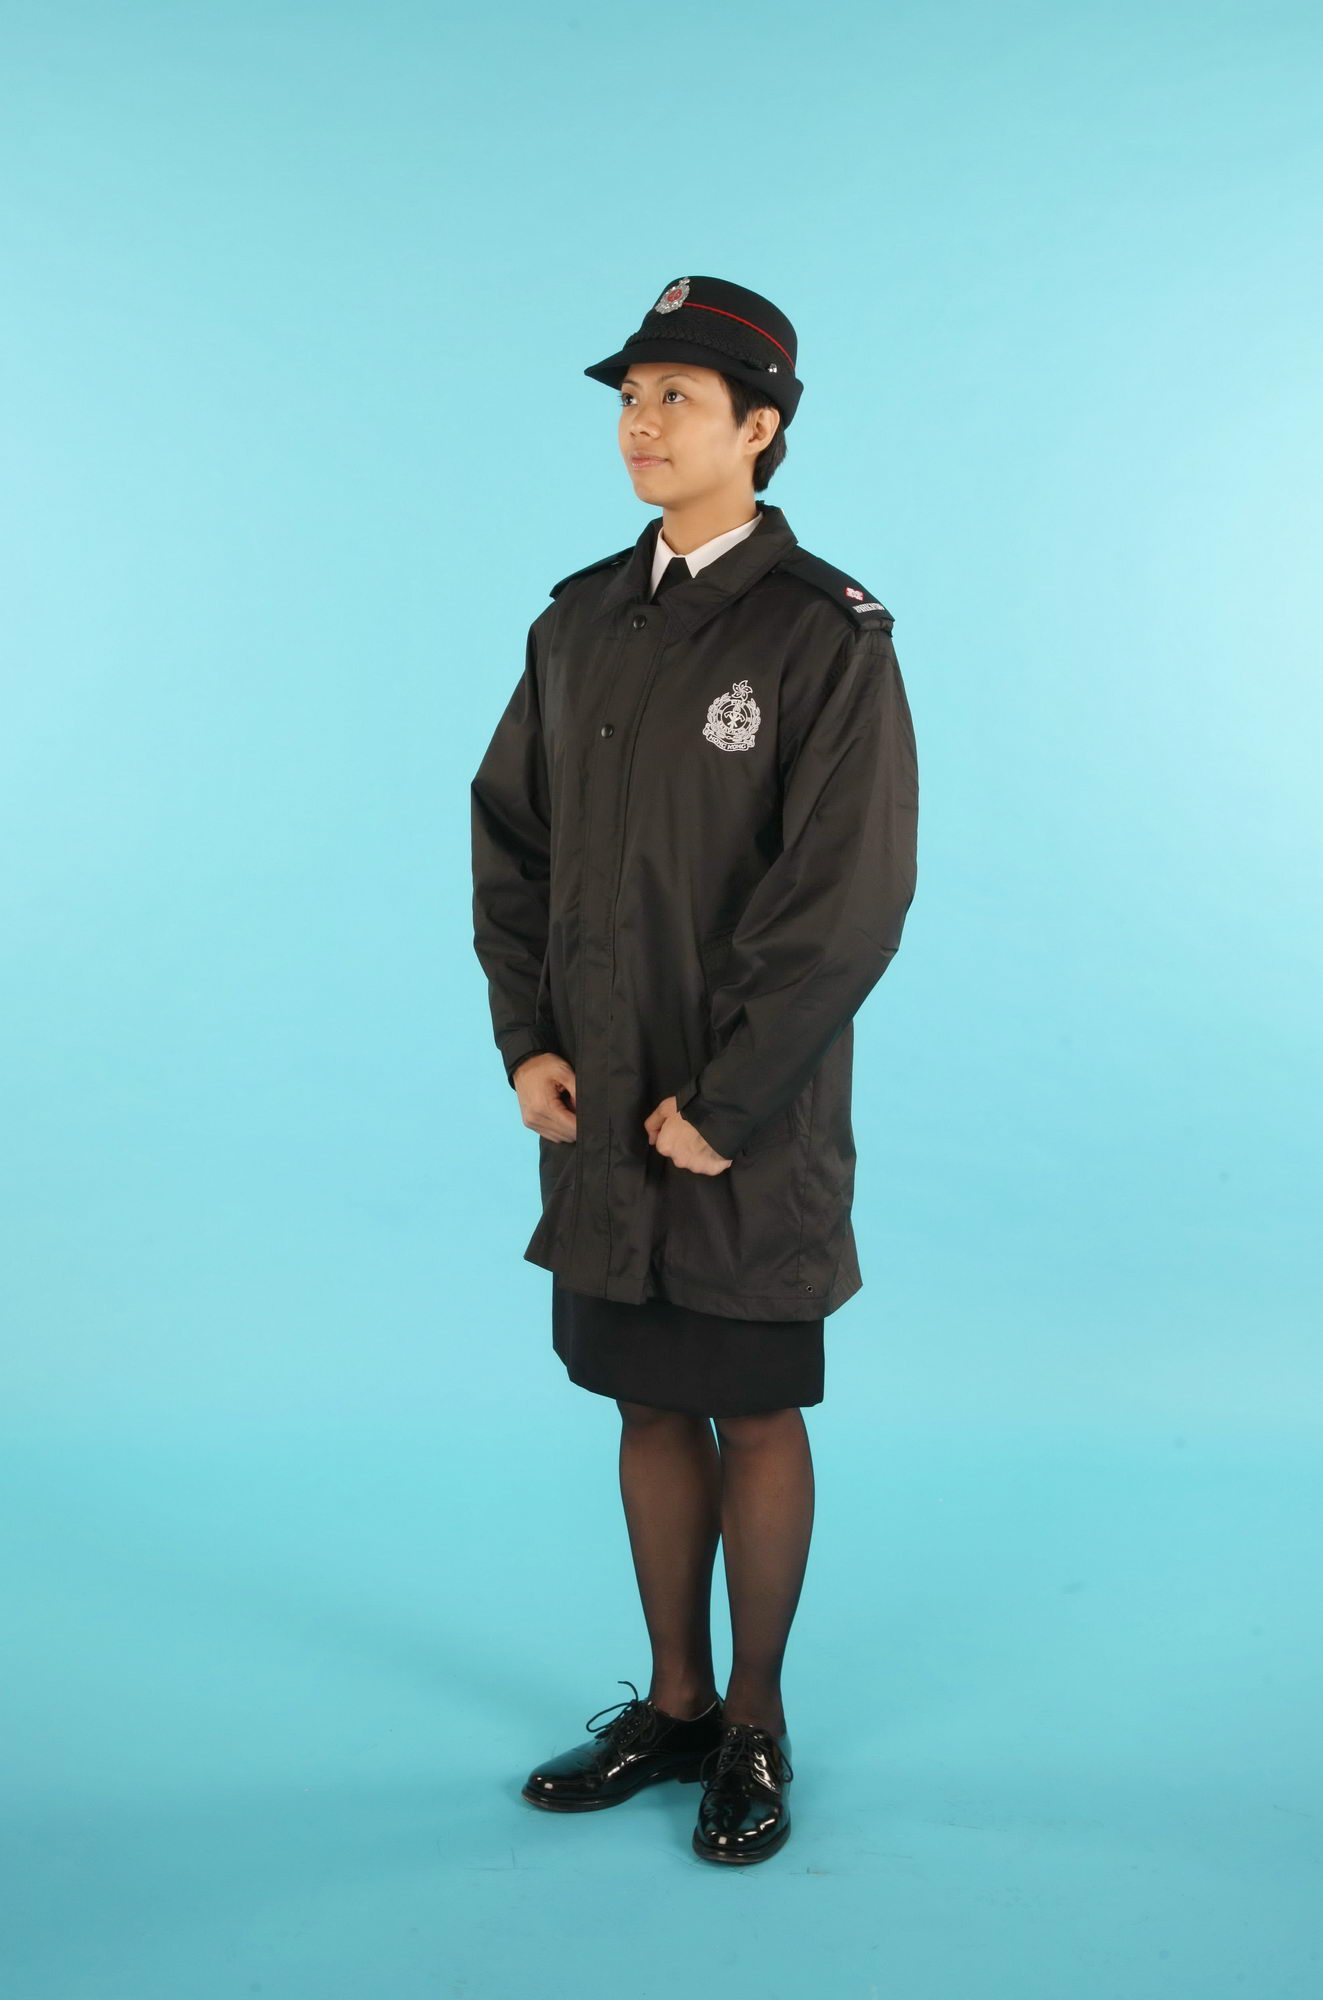 Female Officer Uniform 80